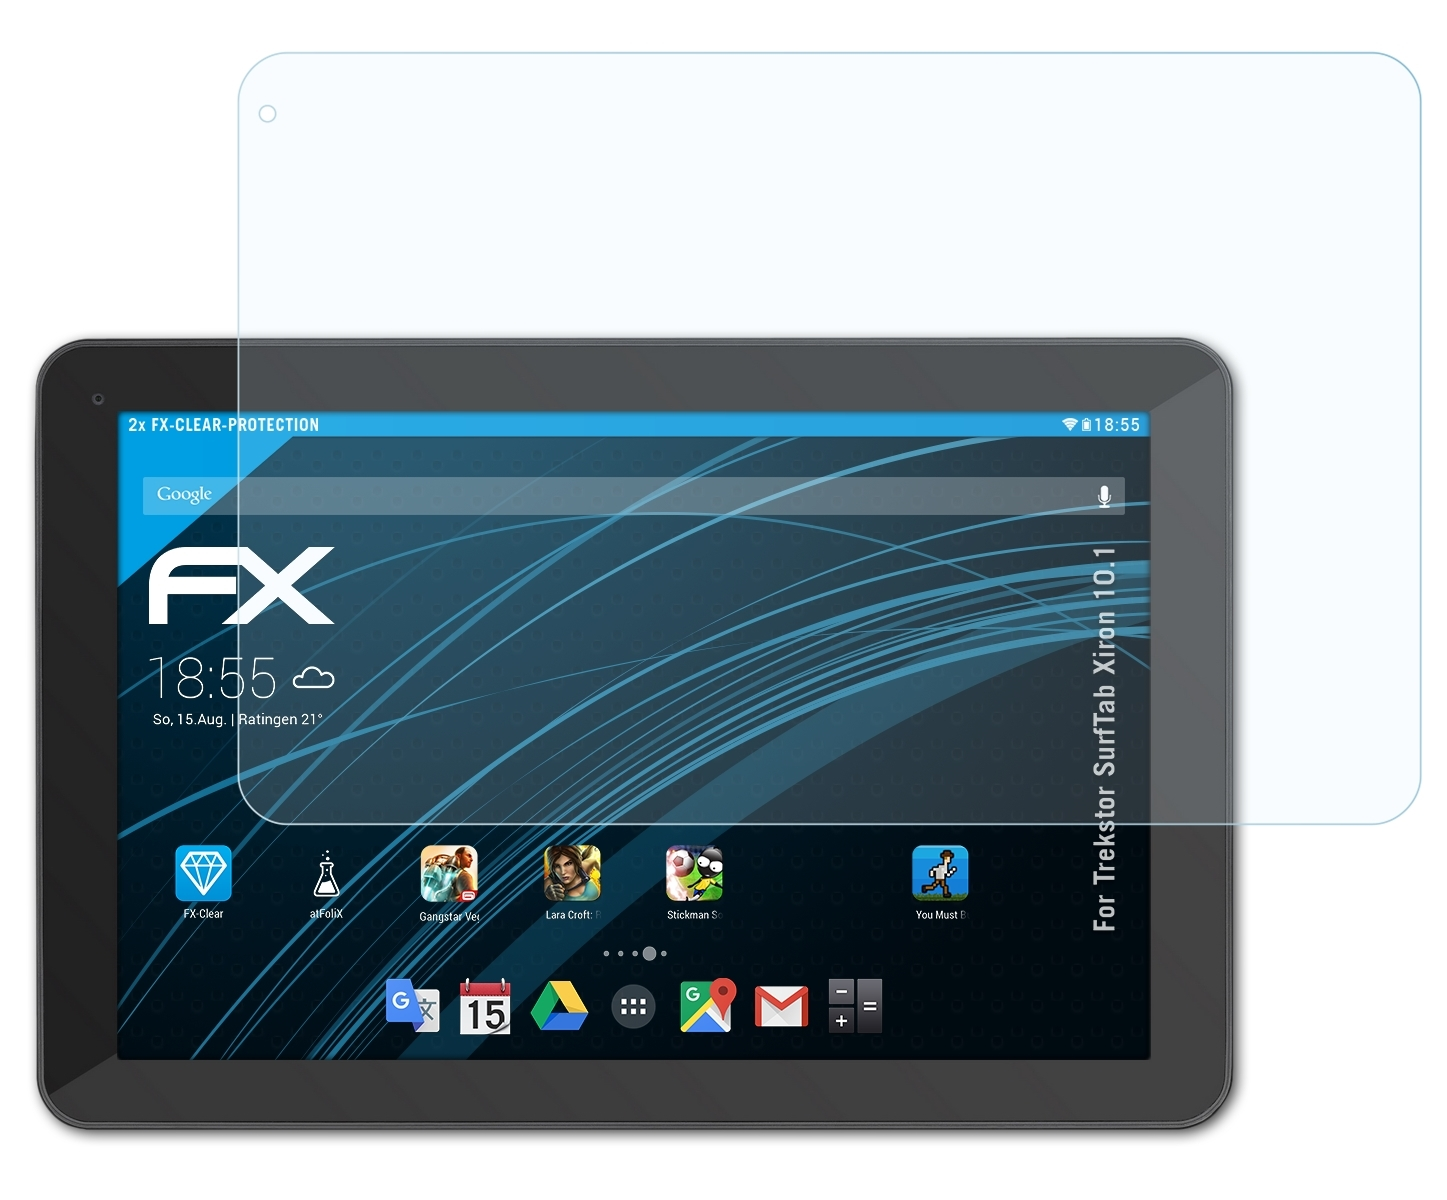 ATFOLIX 2x Displayschutz(für FX-Clear 10.1) SurfTab Xiron Trekstor